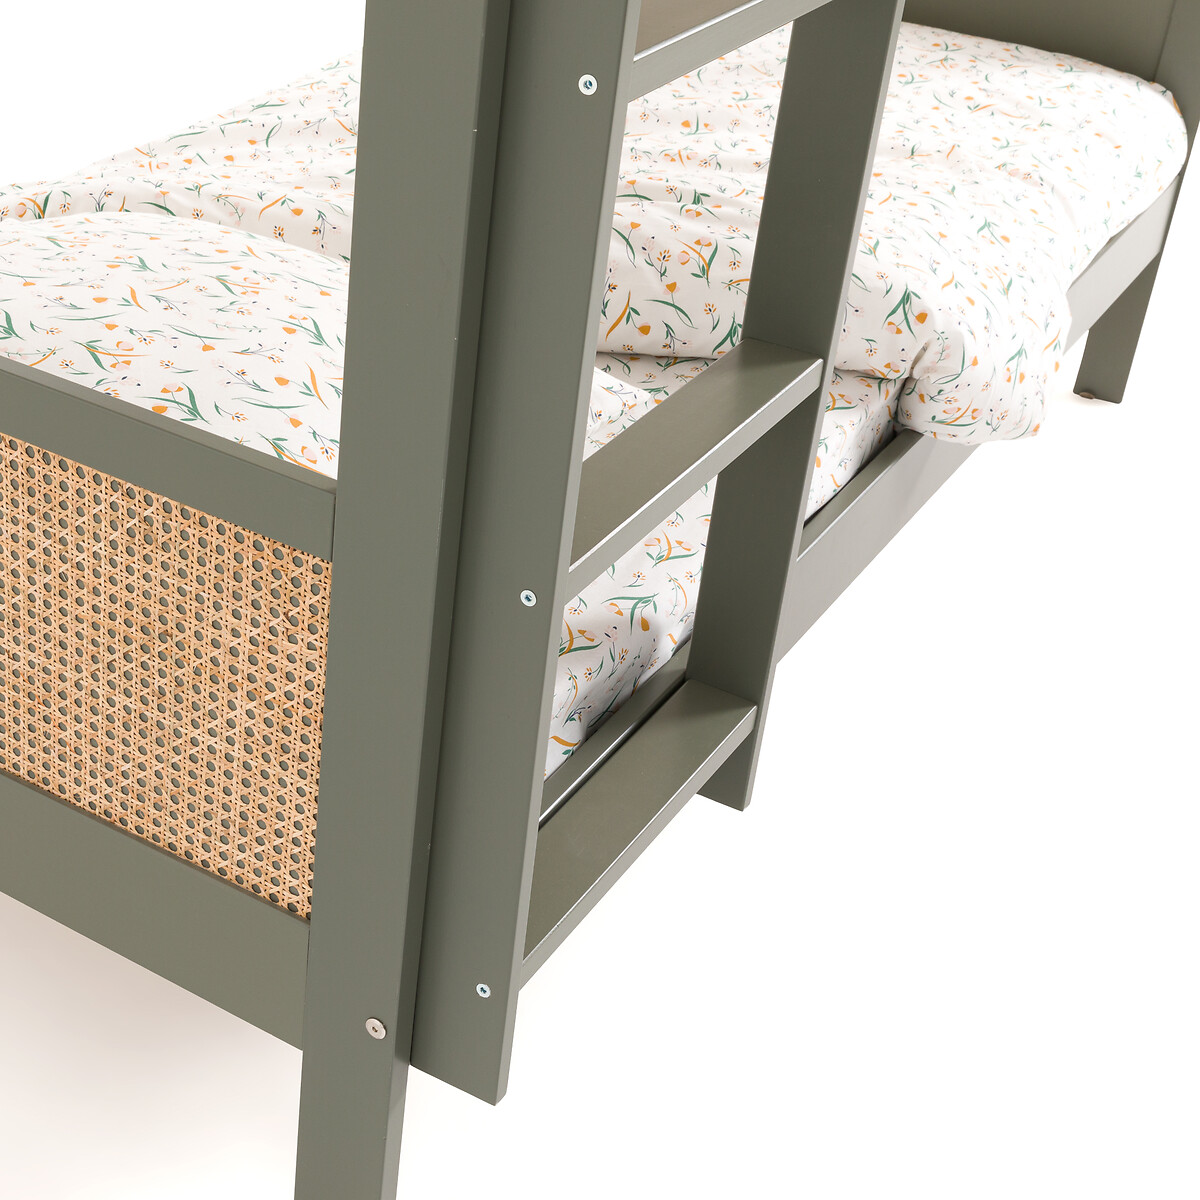 Кровать двухъярусная из сосны и плетеного материала Caneo  90 x 190 см зеленый LaRedoute, размер 90 x 190 см - фото 5